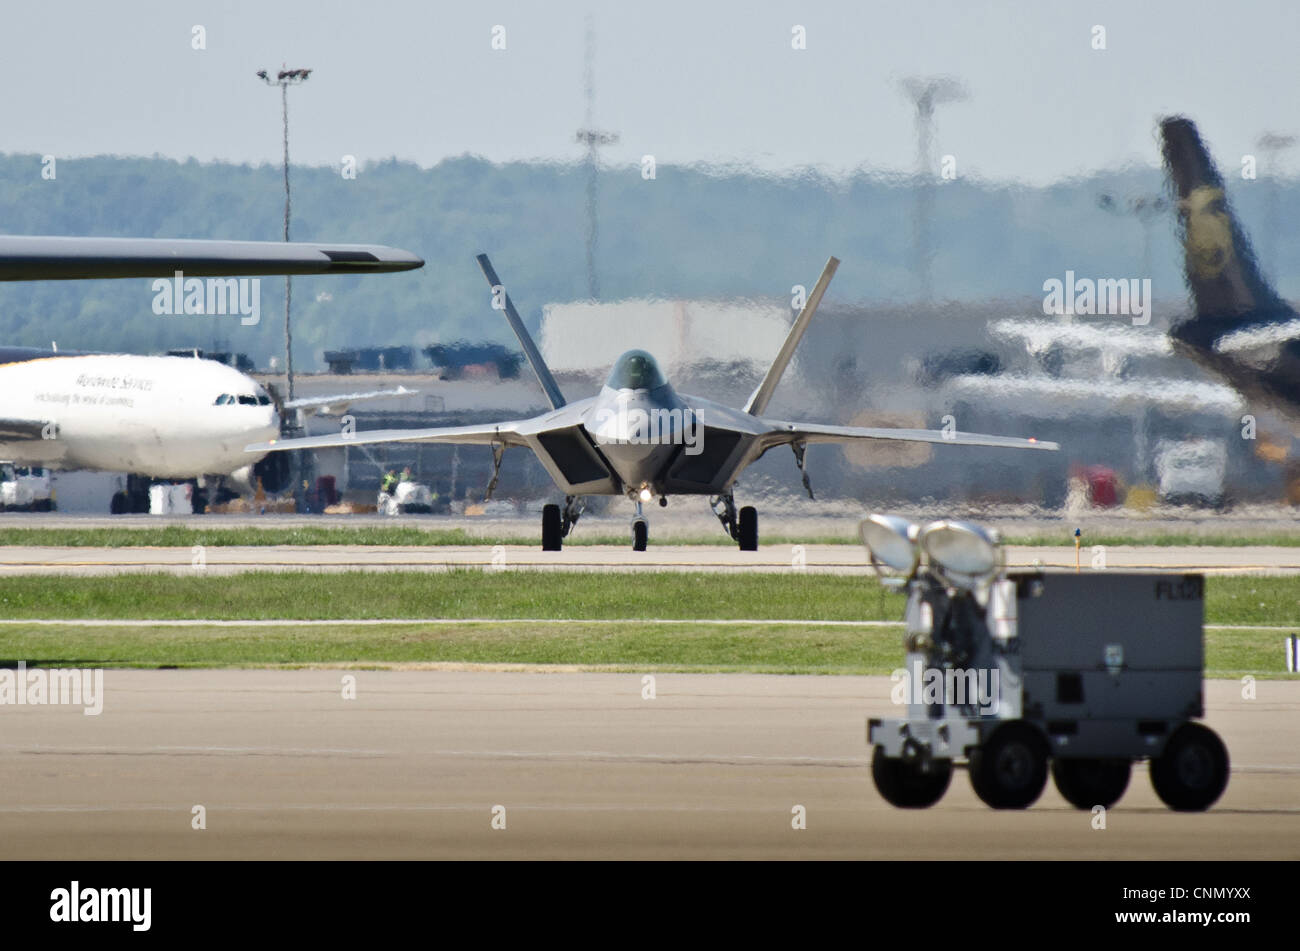 Ein US Air Force F-22 Raptor Flugzeug taxiert in die Kentucky Air National Guard Base in Louisville, Ky., am 18. April 2012, vor diesem Wochenende 22. Jährliche Thunder over Louisville Air Show. Die Raptor ist das führende Kampfflugzeug des US-Militärs, mit Fähigkeiten, die von keinem anderen Flugzeug erreicht werden können. Stockfoto